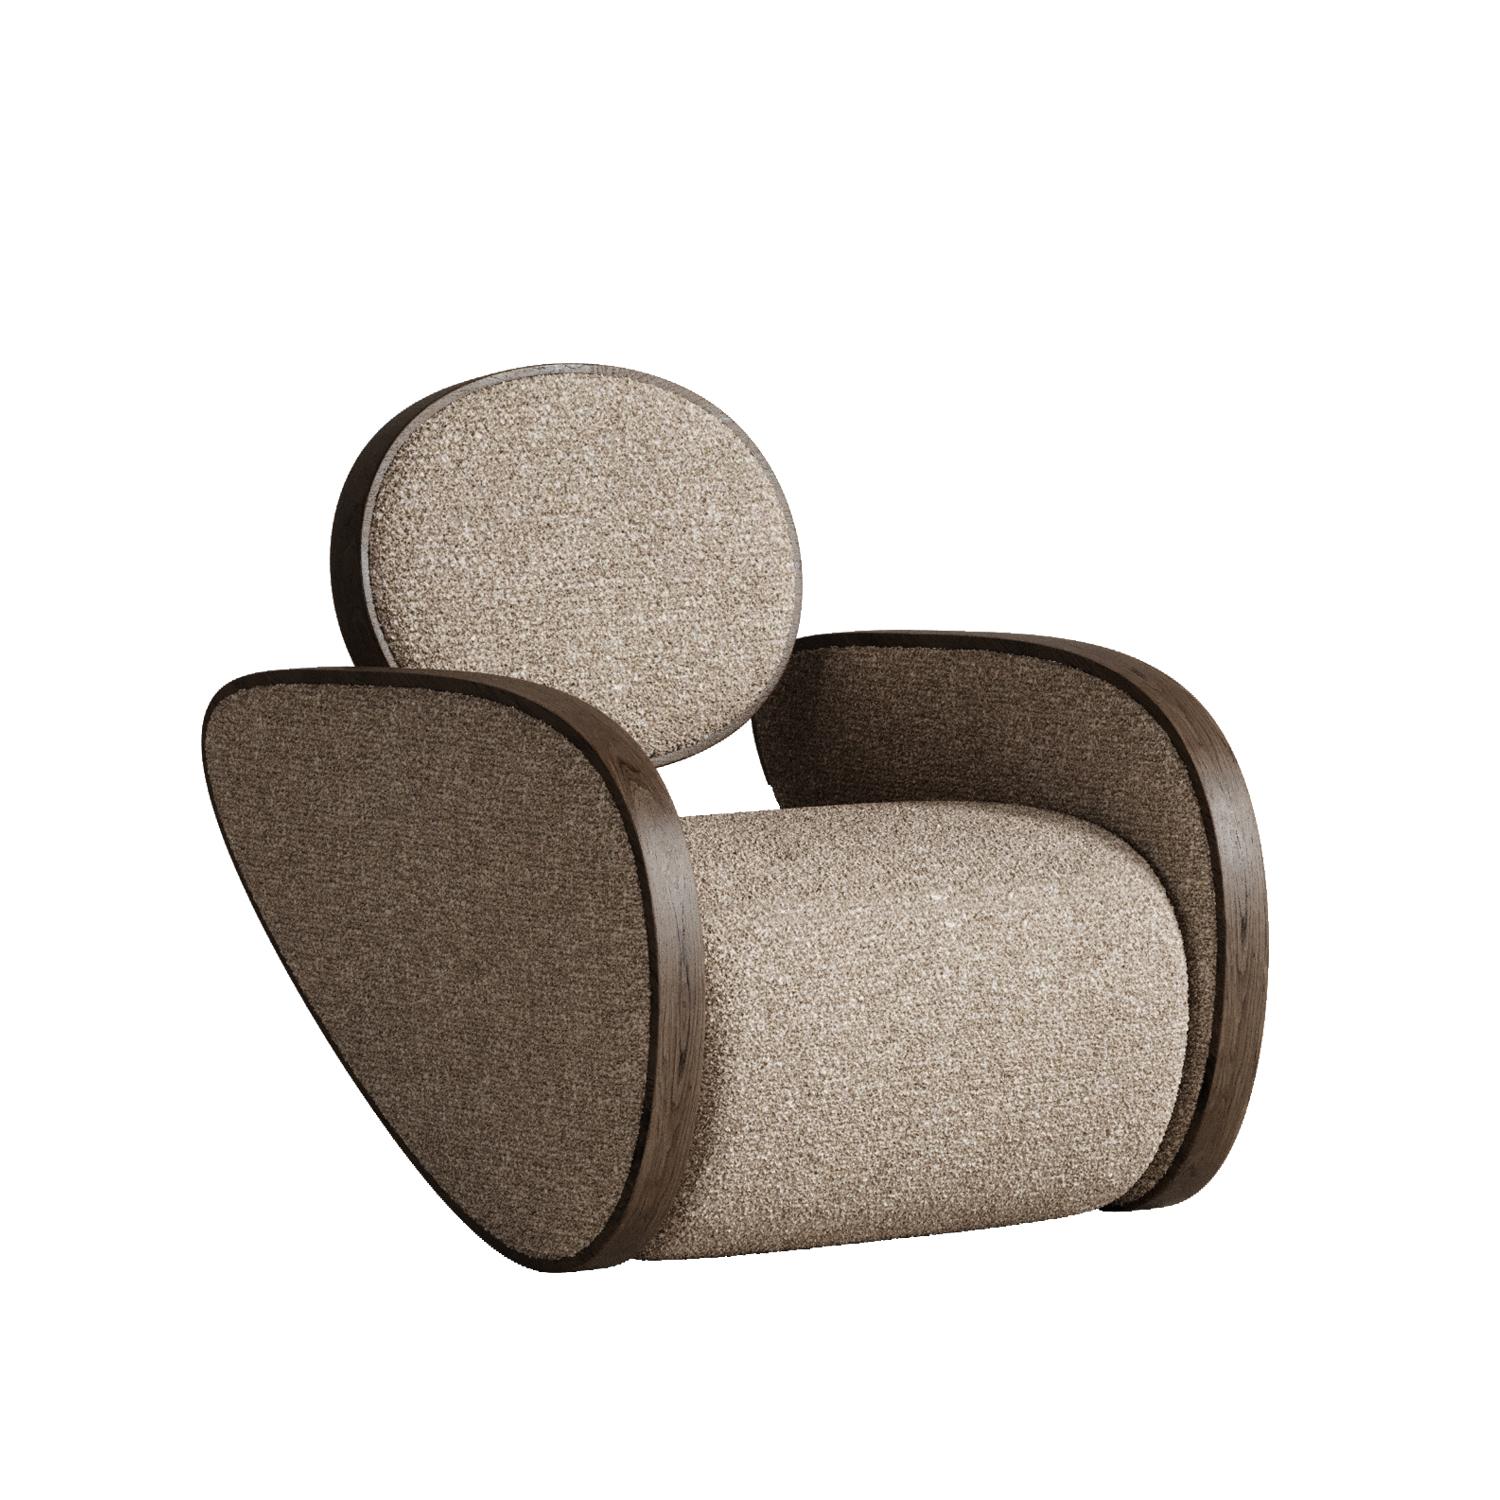 Beigefarbener Nautilus-Stuhl von Plyus Design
Abmessungen: T 100 x B 80 x H 86 cm
MATERIALIEN:  Holz, HR-Schaum, Polyesterwatte, Stoffpolsterung.

Stuhl 